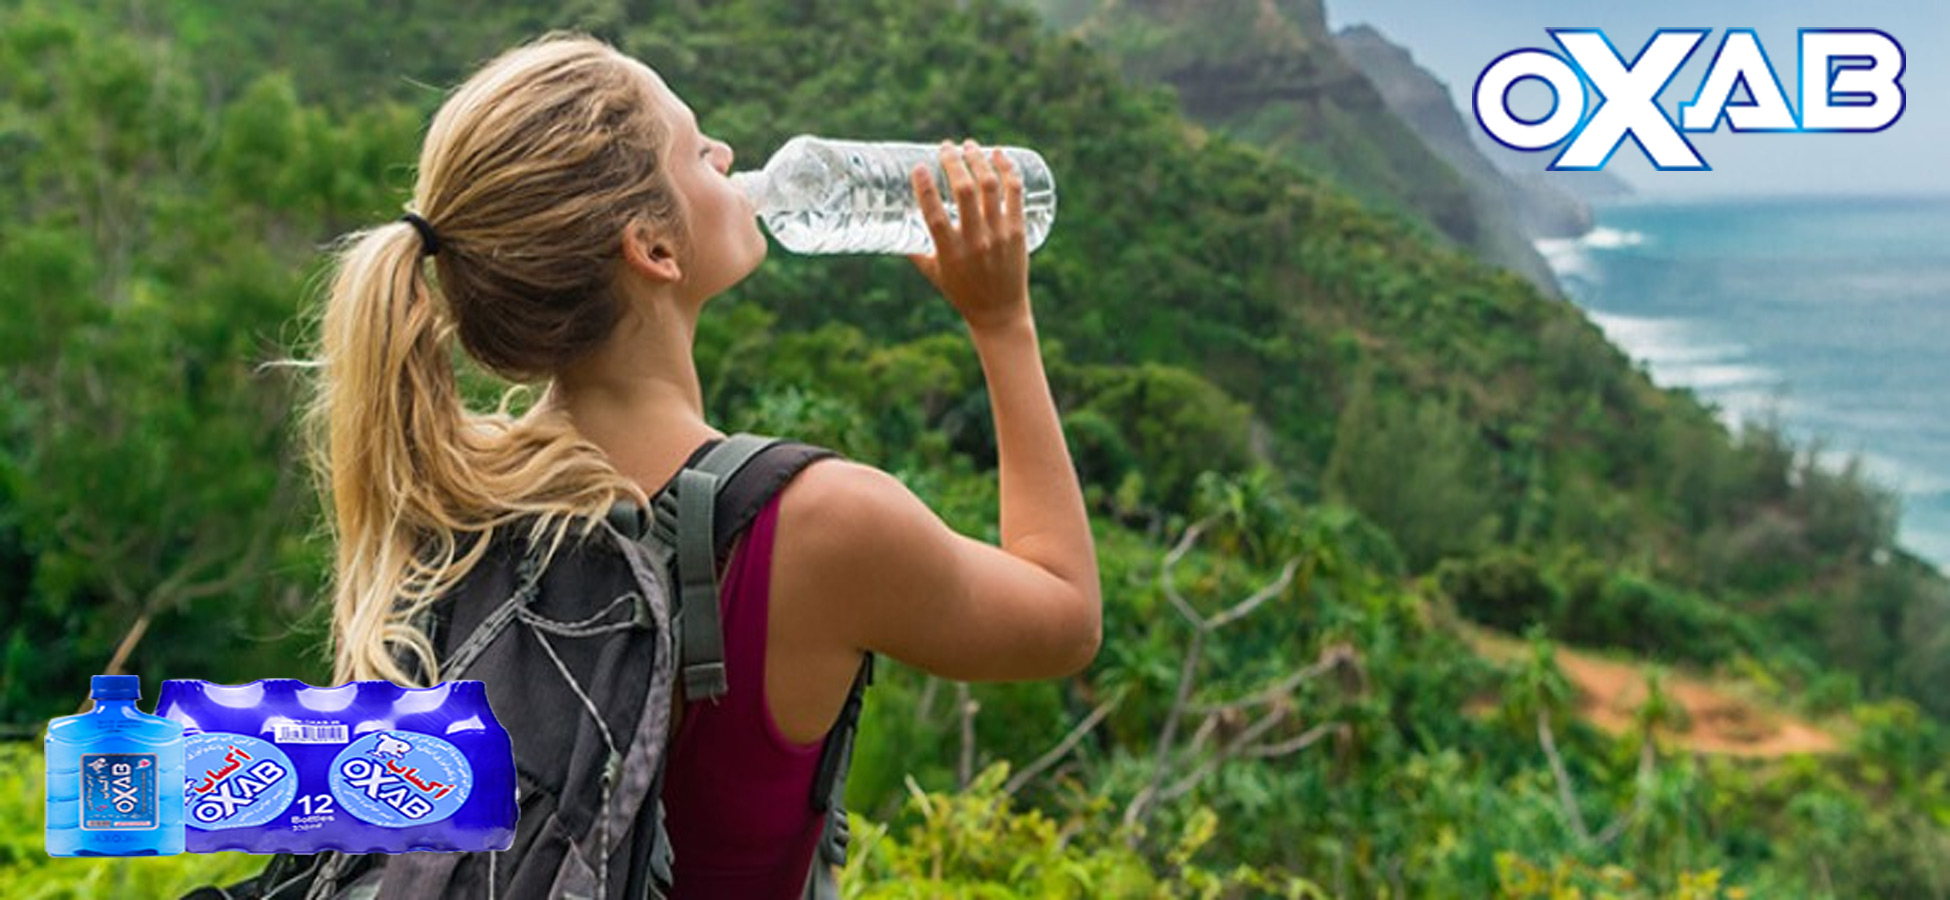 نوشیدن آب در هنگام سفر